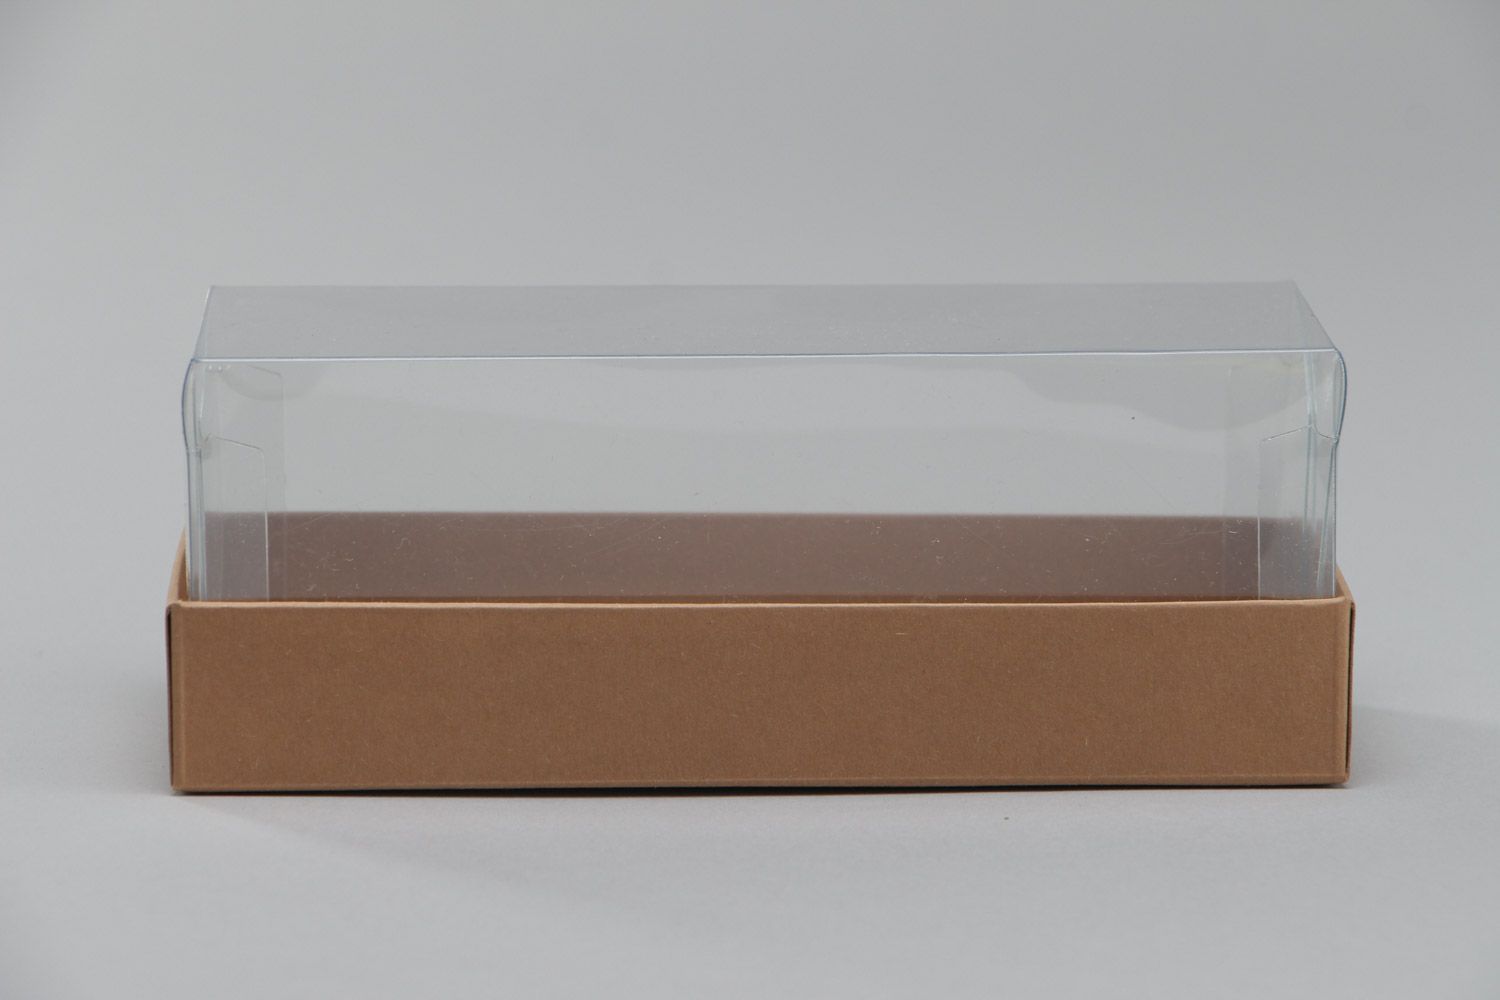 Коробка декоративная из картона и ПВХ ручной работы длинная подарочная стильная фото 2